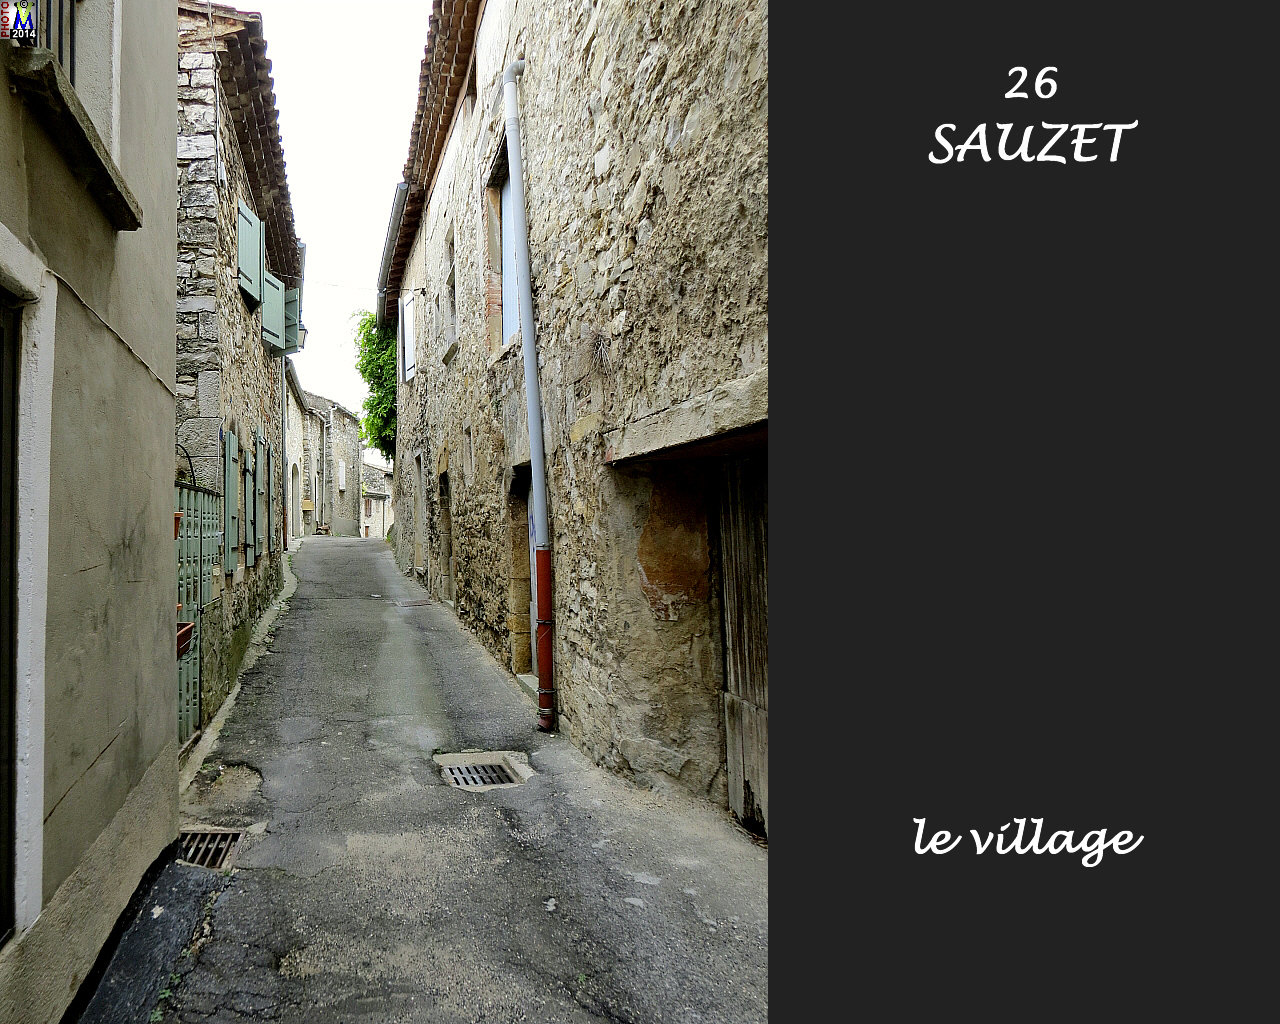 26SAUZET_village_110.jpg